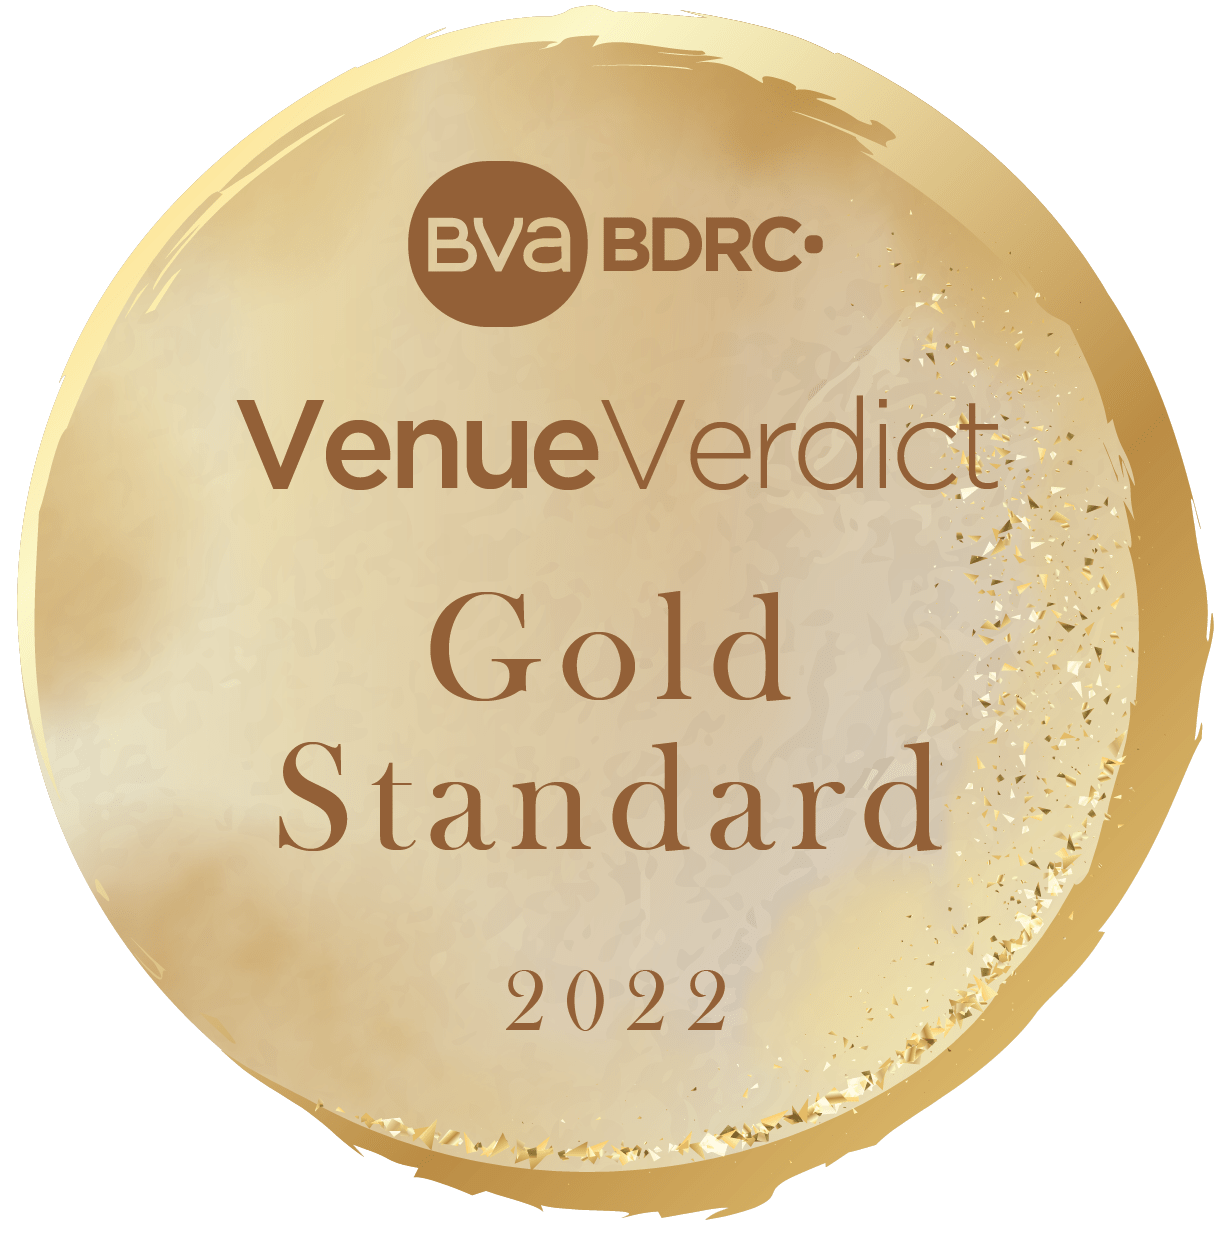 VenueVerdict Gold Standard 2022 Accreditation